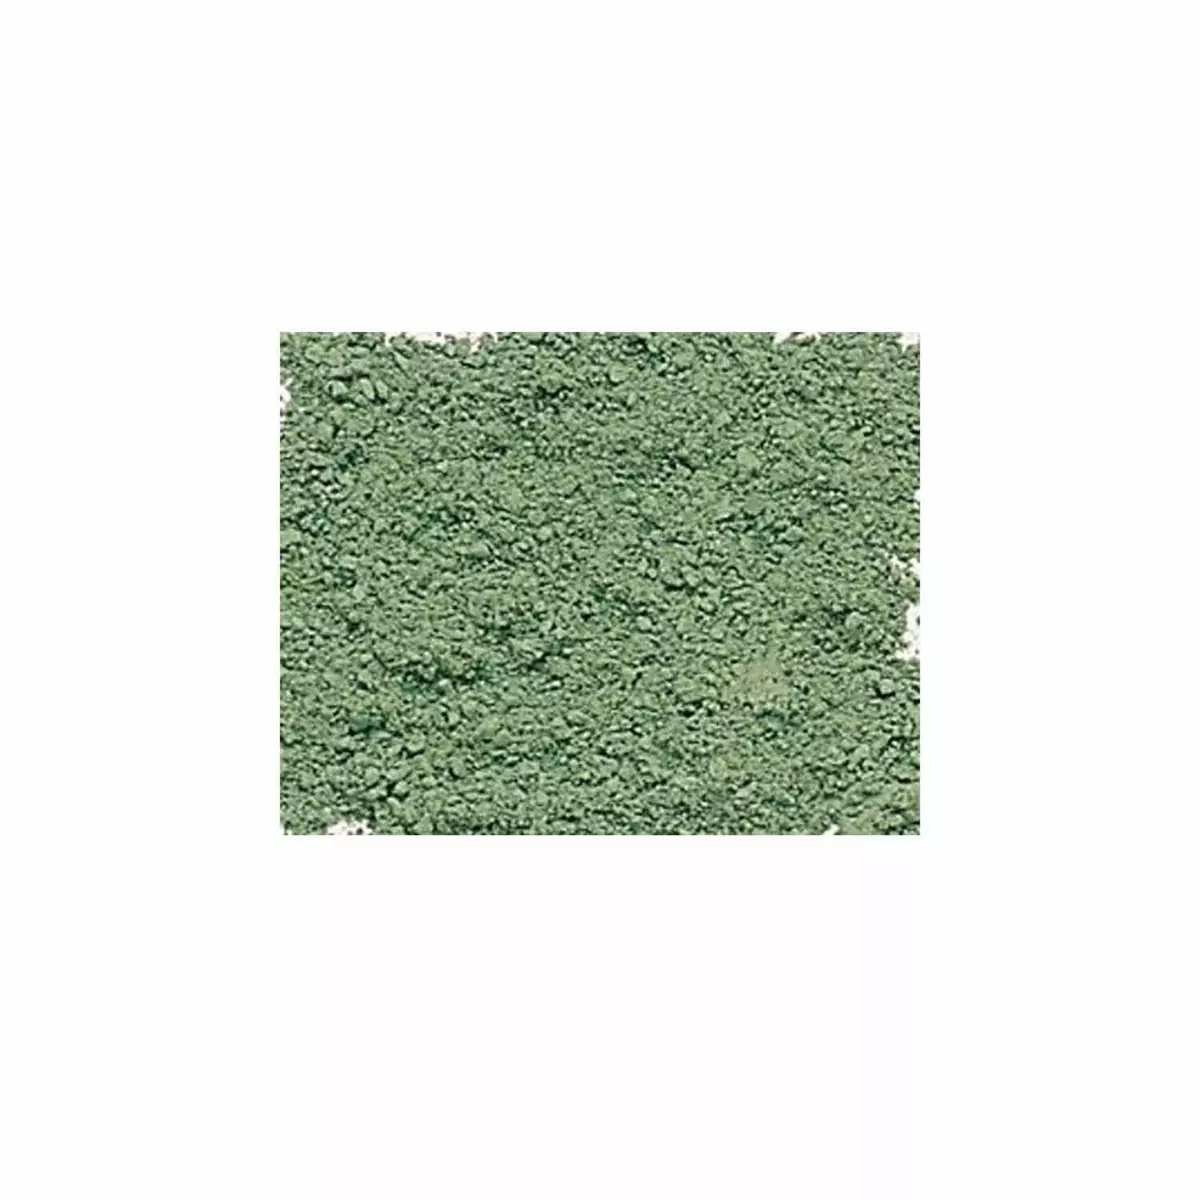  Pigment pour création de peinture - pot 120 g - Terre verte